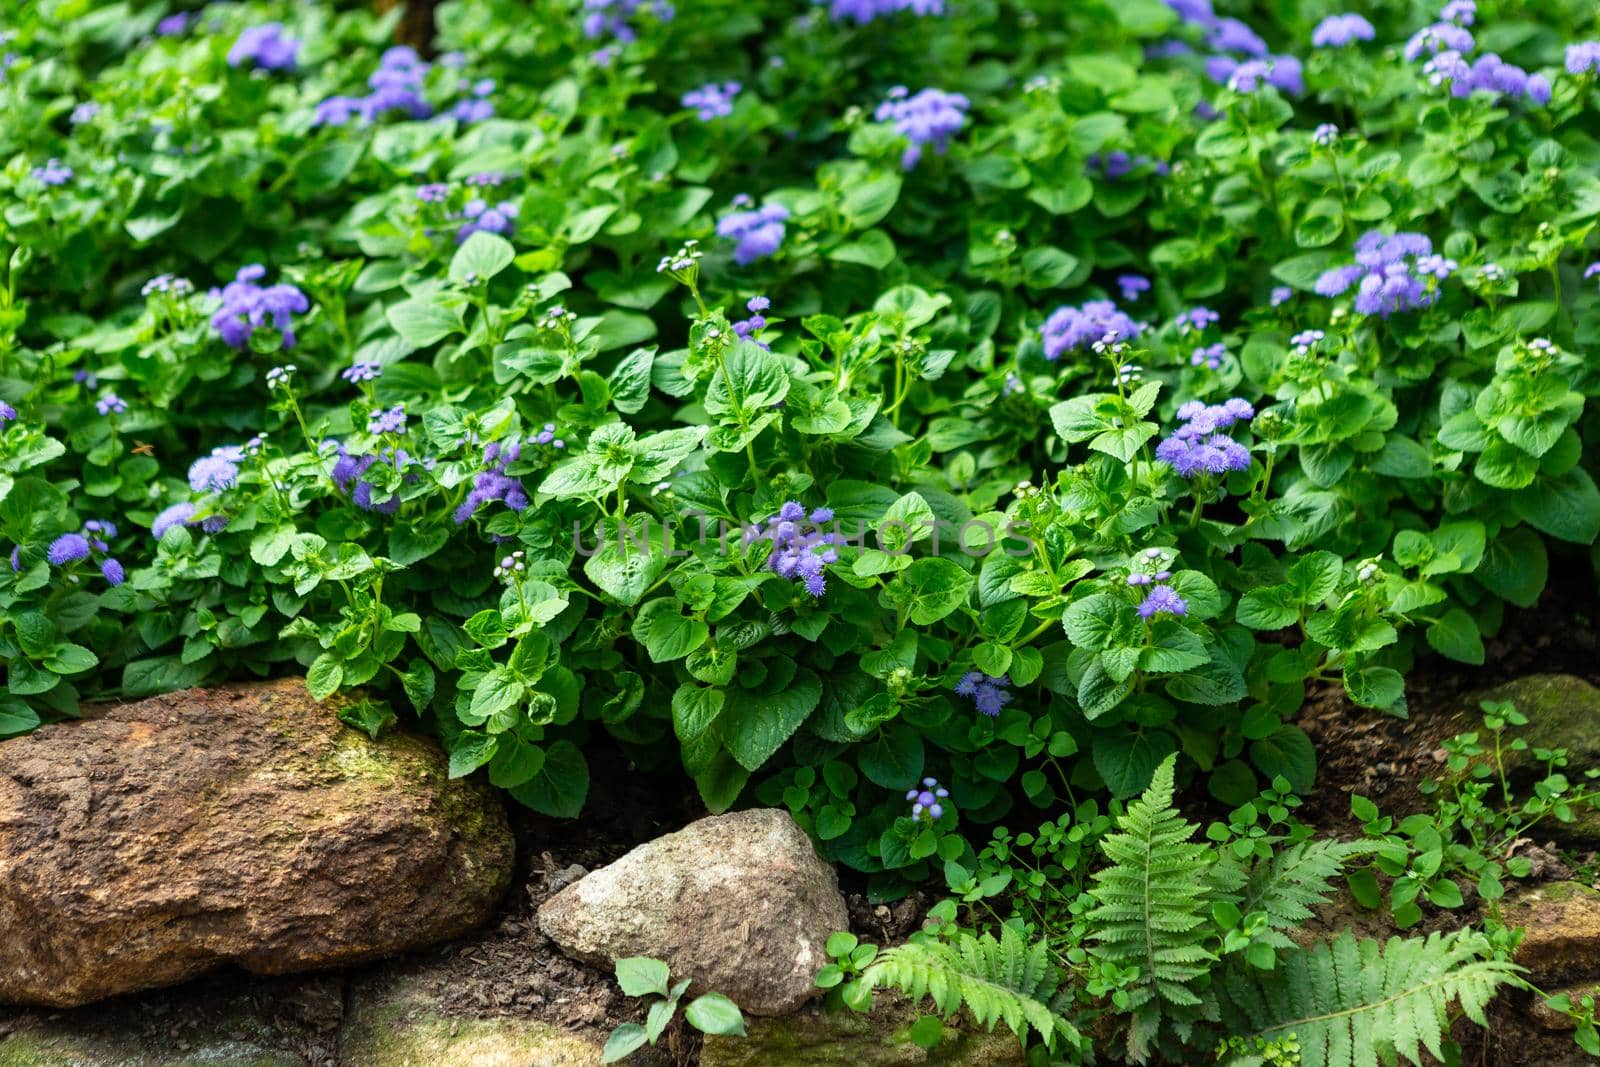 a little violet flower on green leaf background nature in garden.